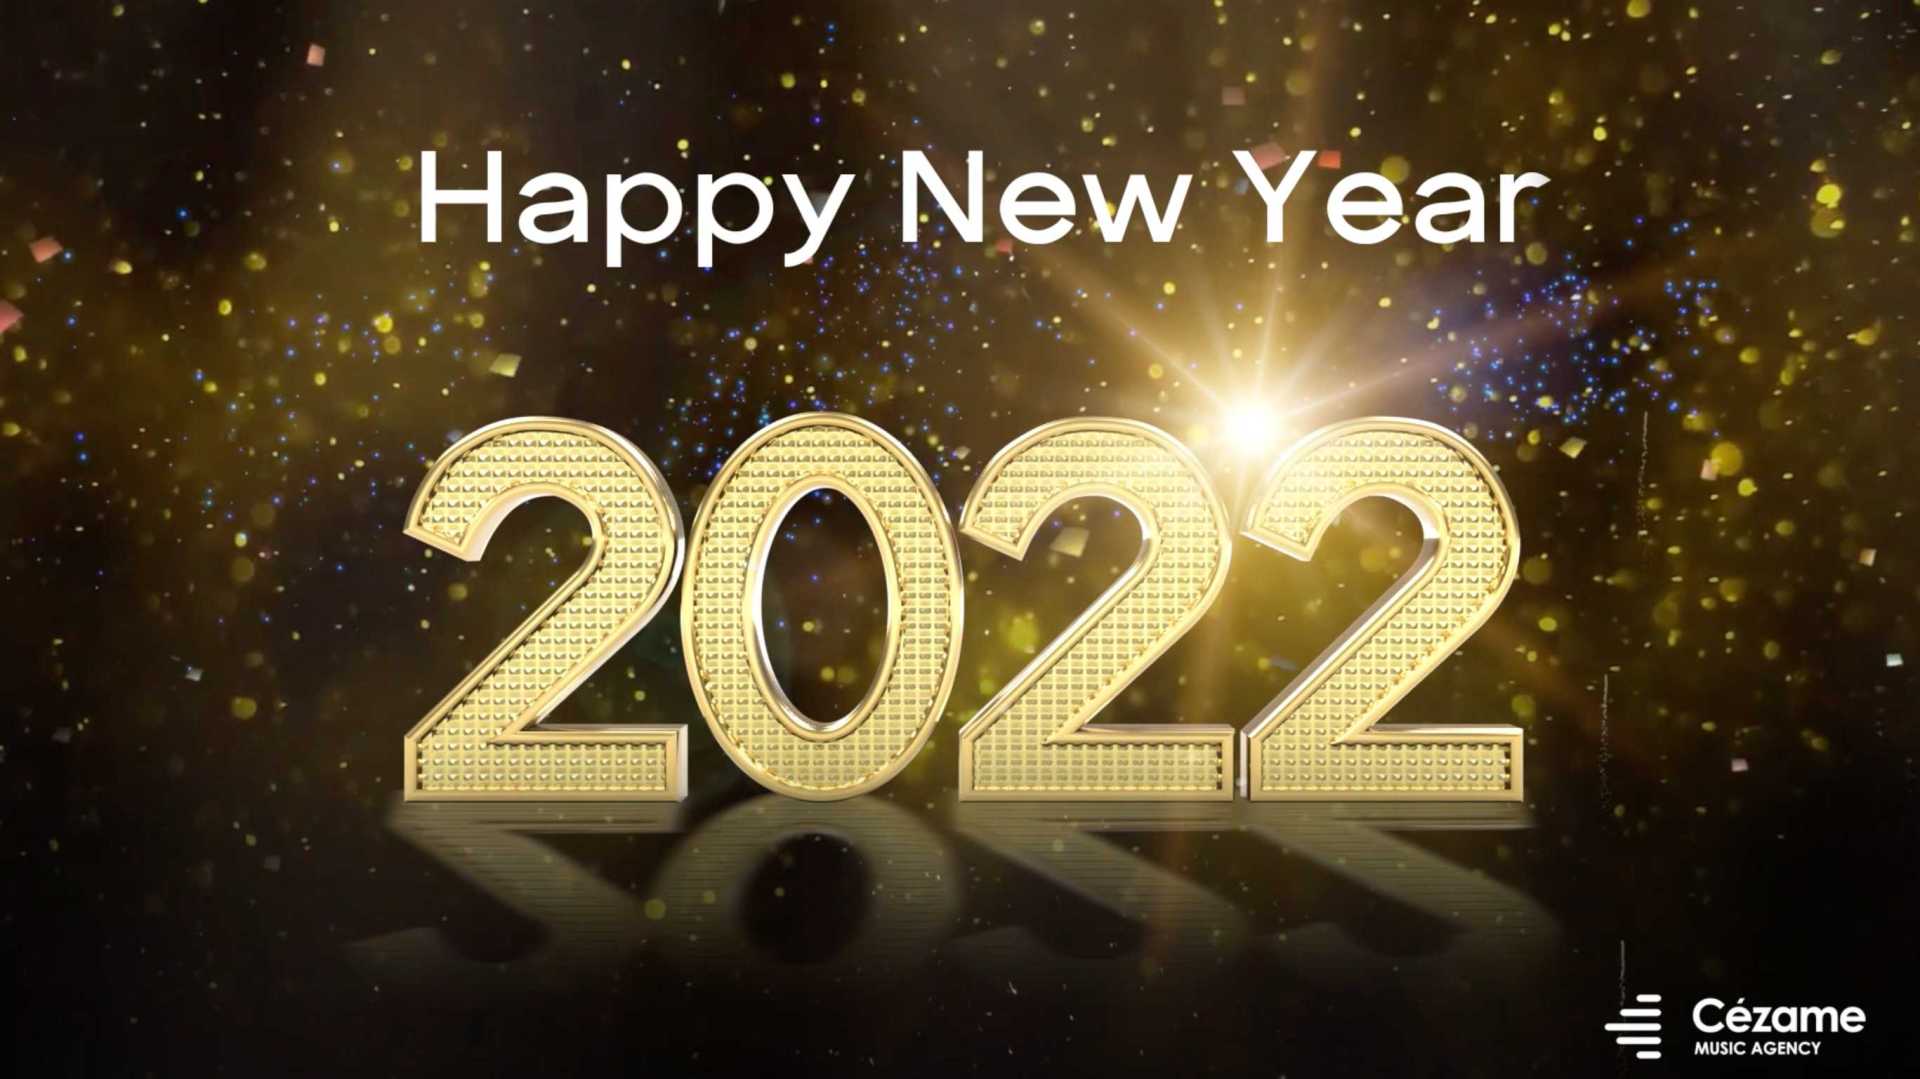 芝麻音乐: happy new year 2022